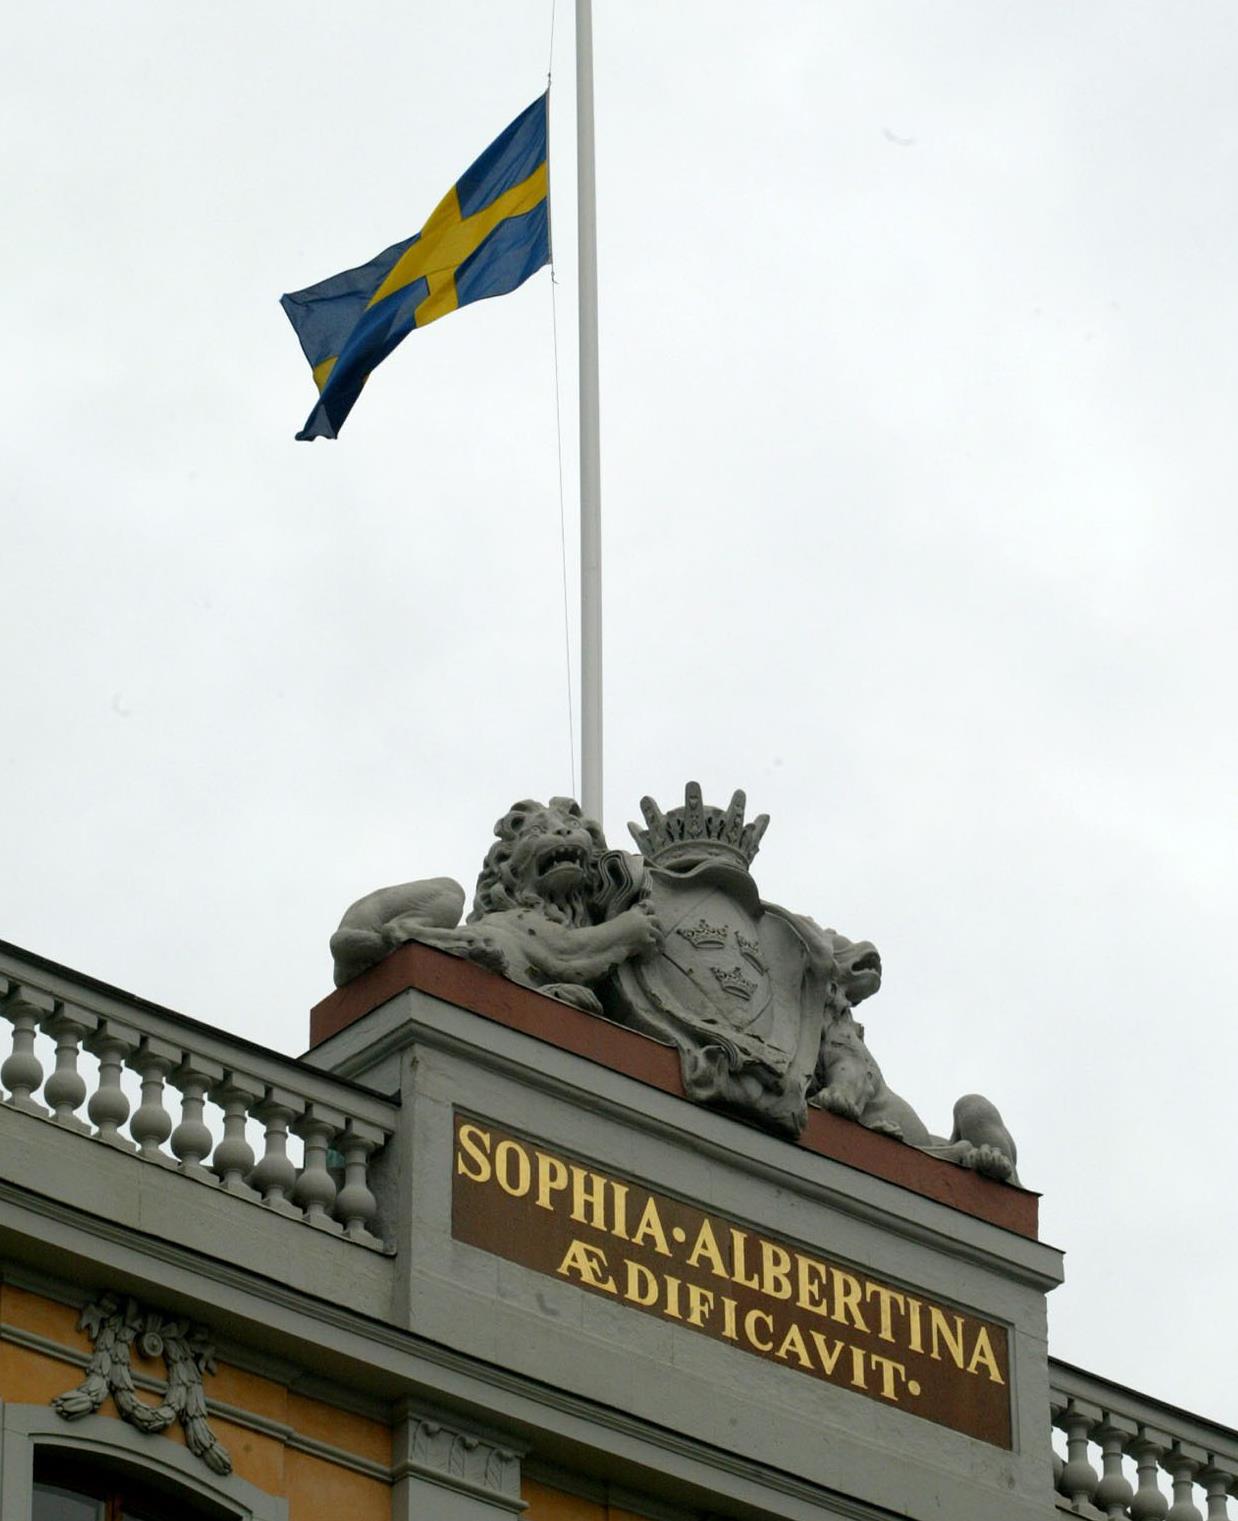 Η Στοκχόλμη απέλασε ρώσο διπλωμάτη, σε αντίποινα προχώρησε η Μόσχα